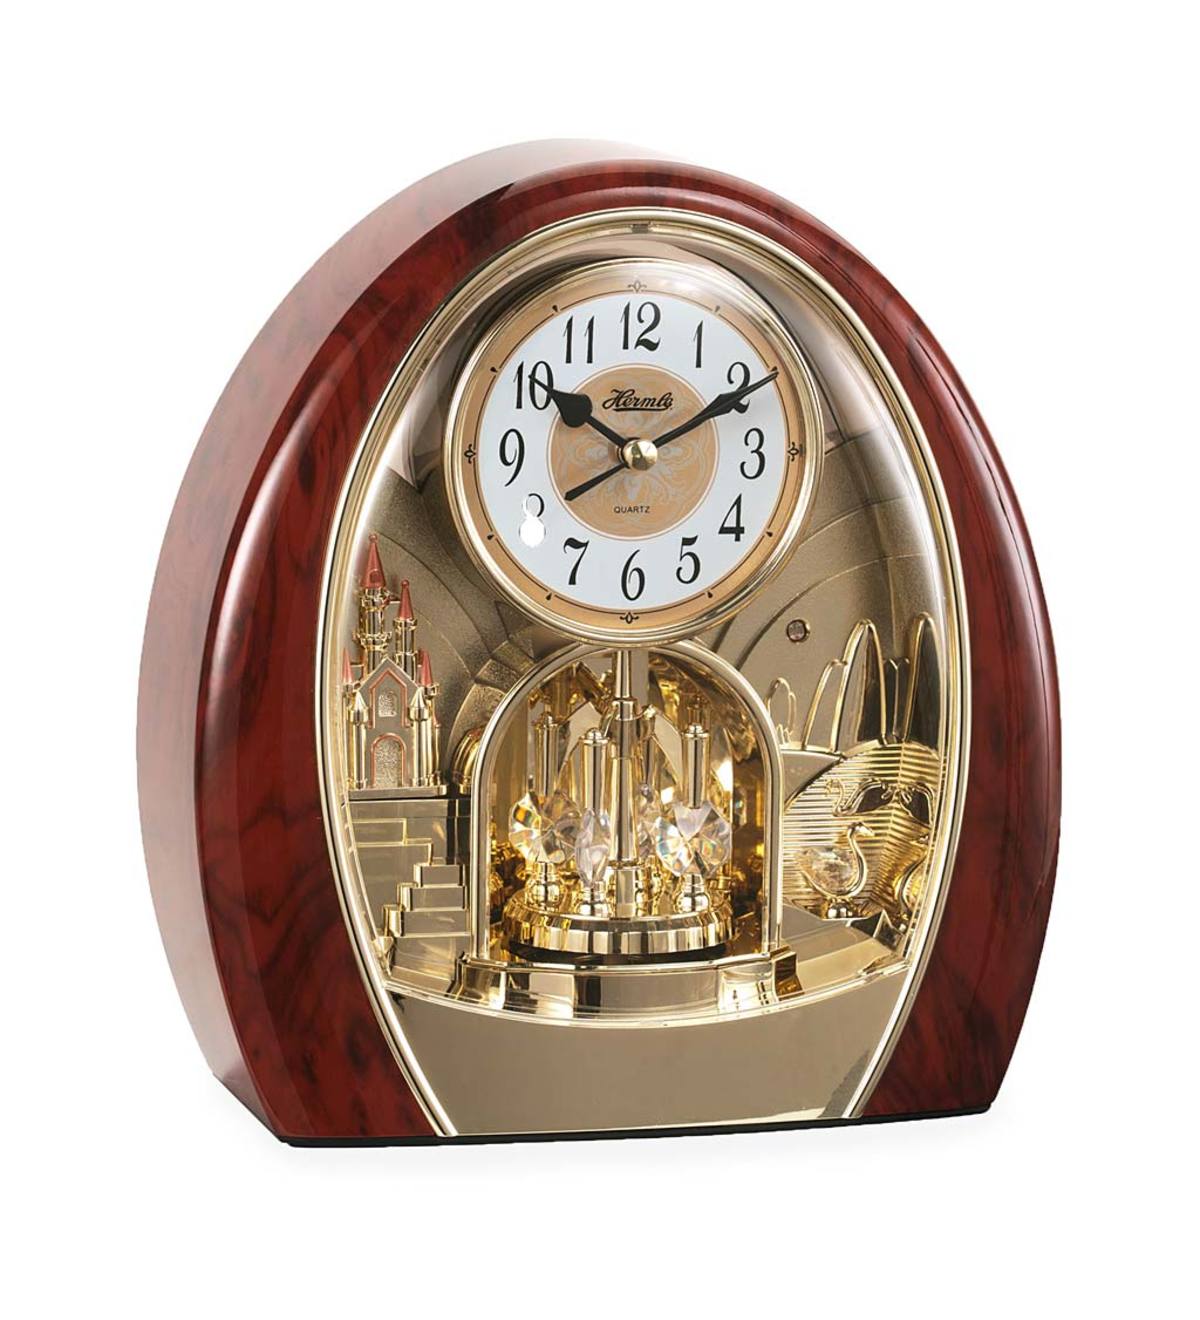 Часы Hermle Quartz. Hermle часы настенные. Часы Hermle 24 часа. Часы Hermle настенные кварцевые. Настенные часы hermle